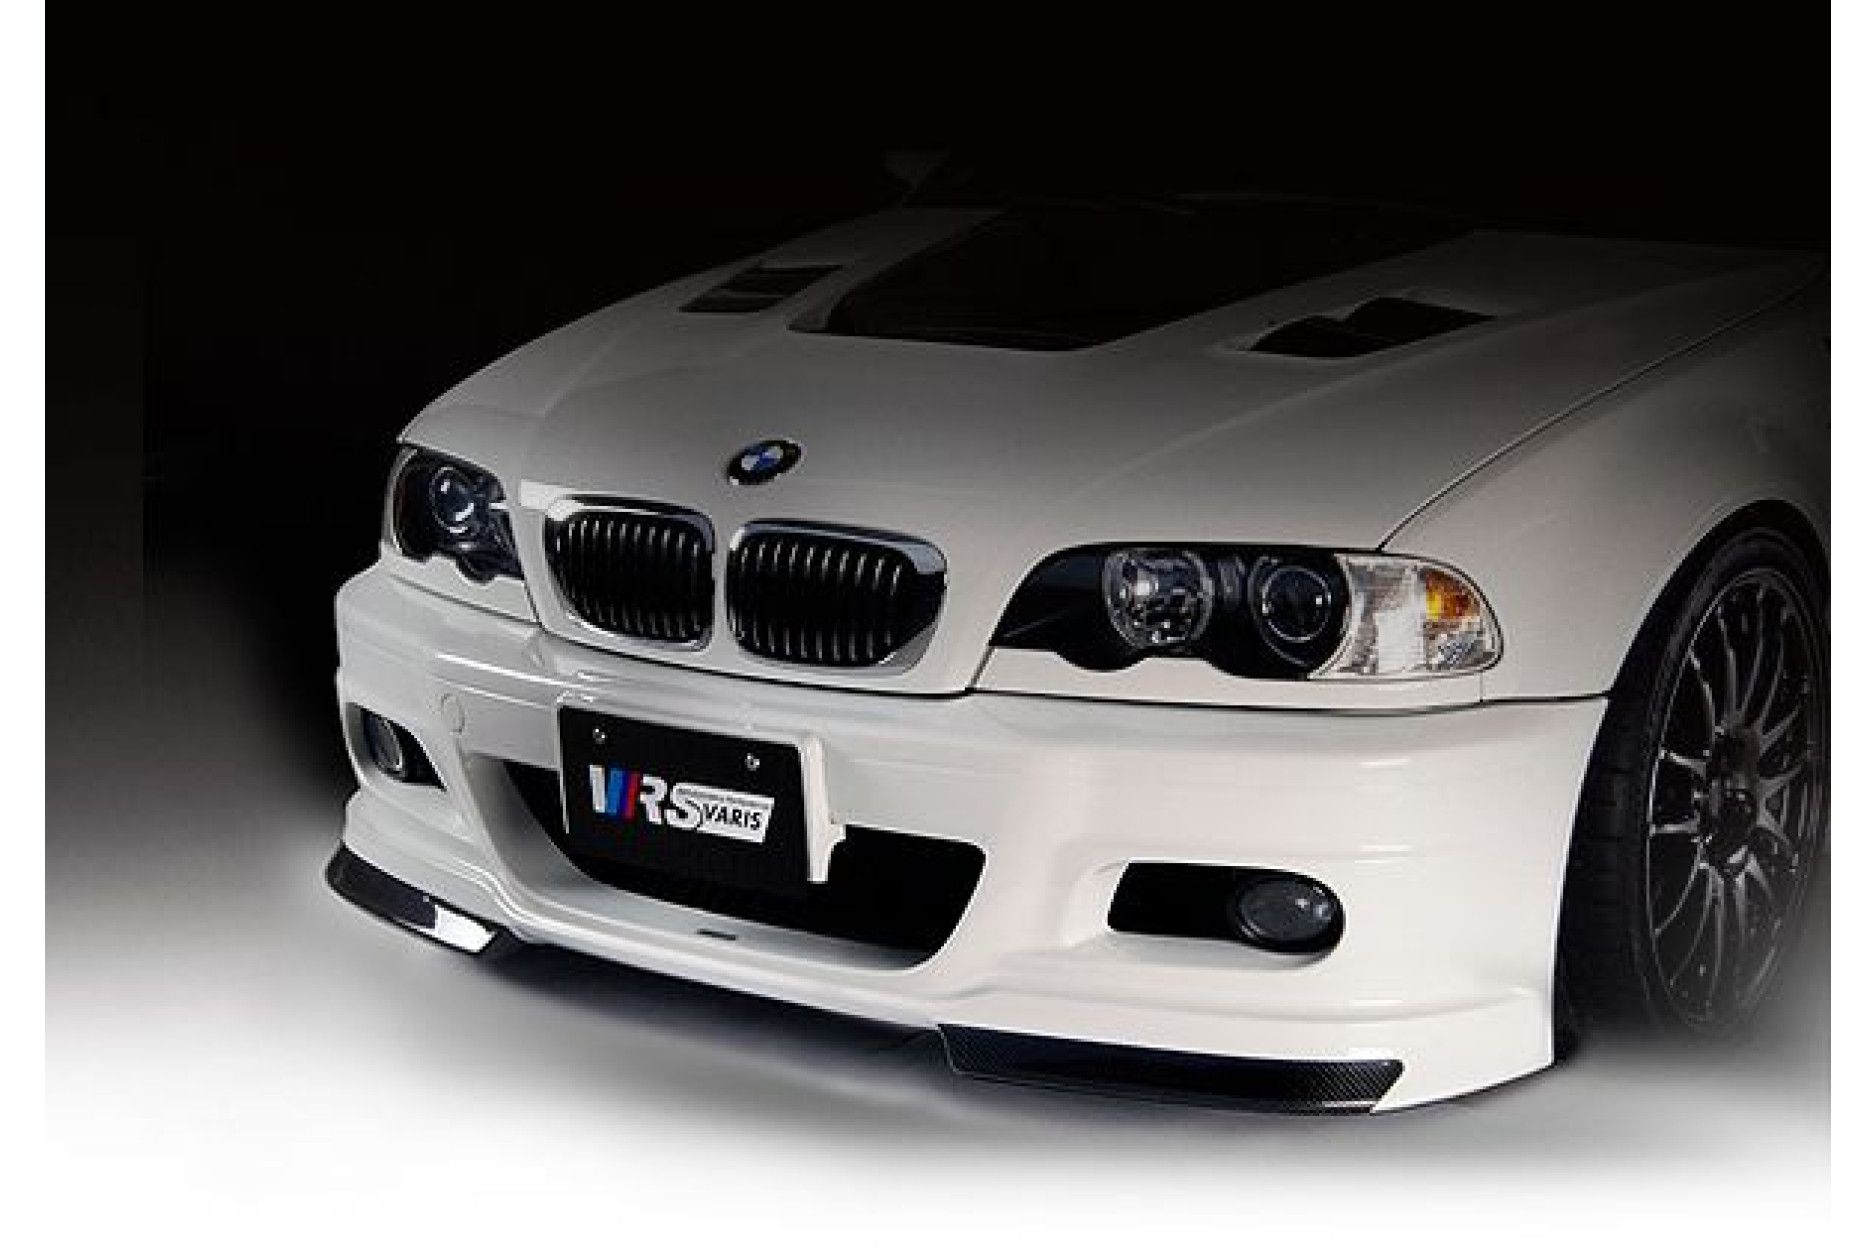 Varis Front für BMW E46 M3 - (Carbon) - online kaufen bei CFD